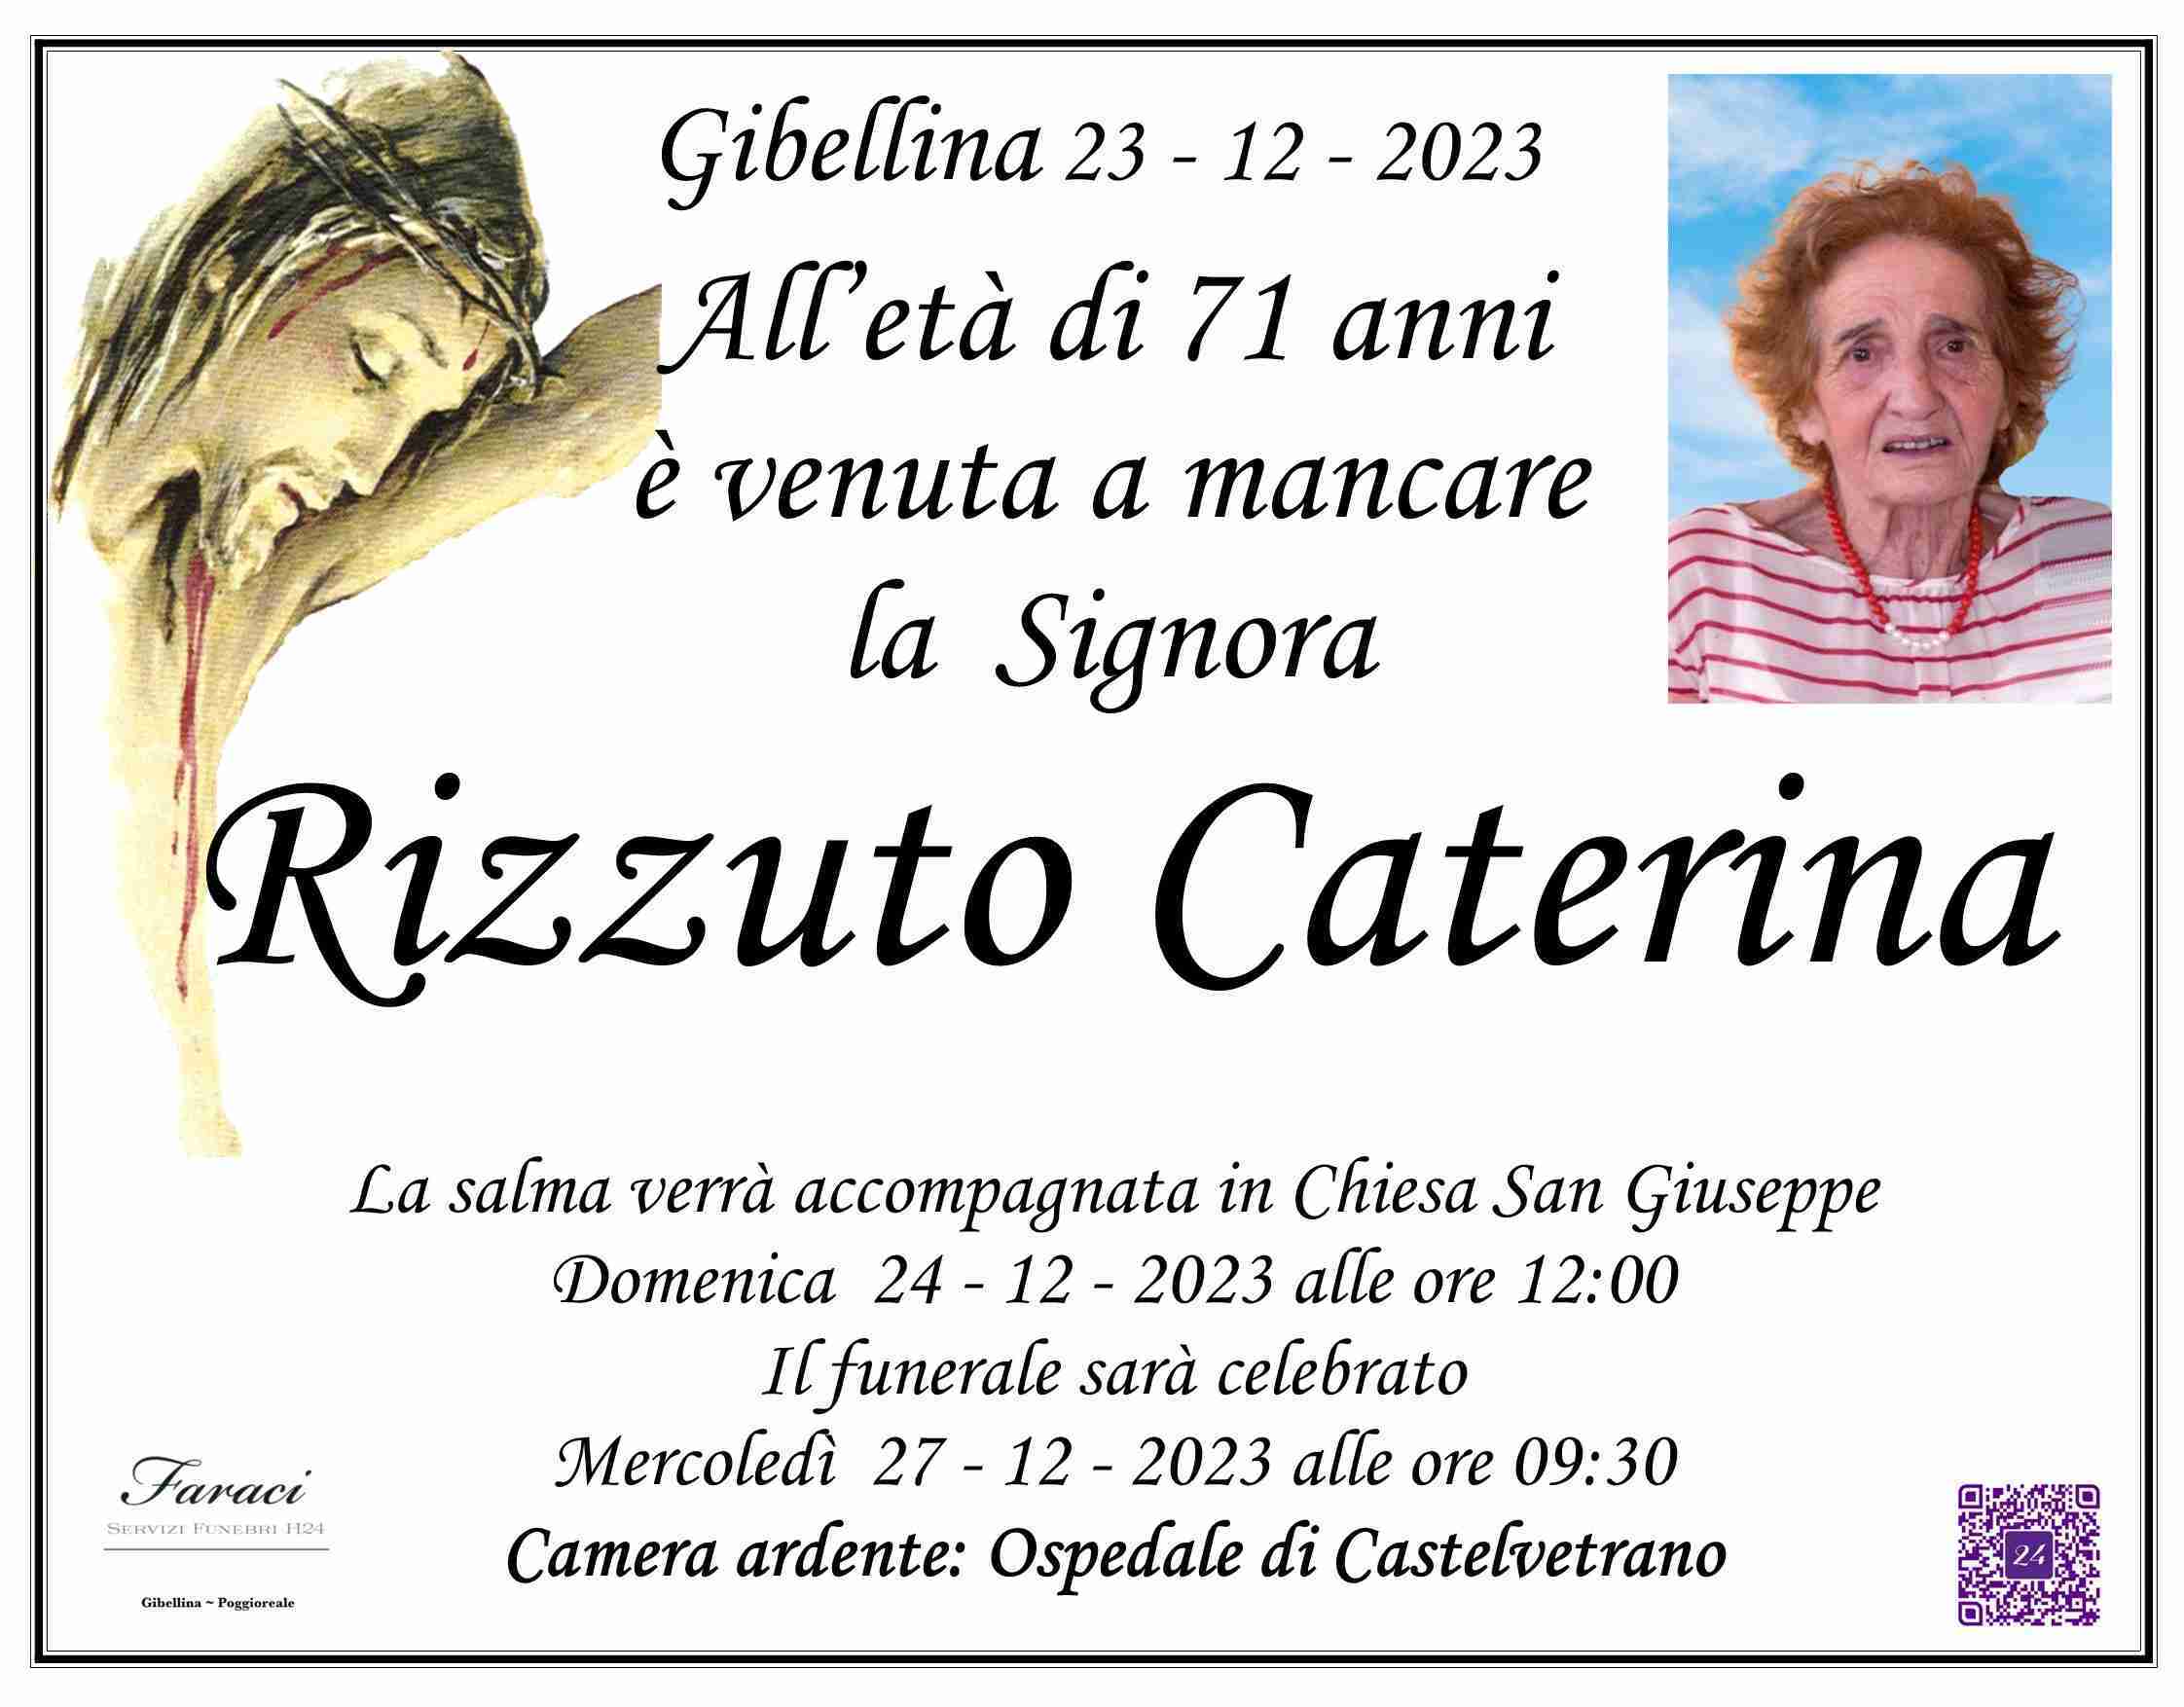 Caterina Rizzuto